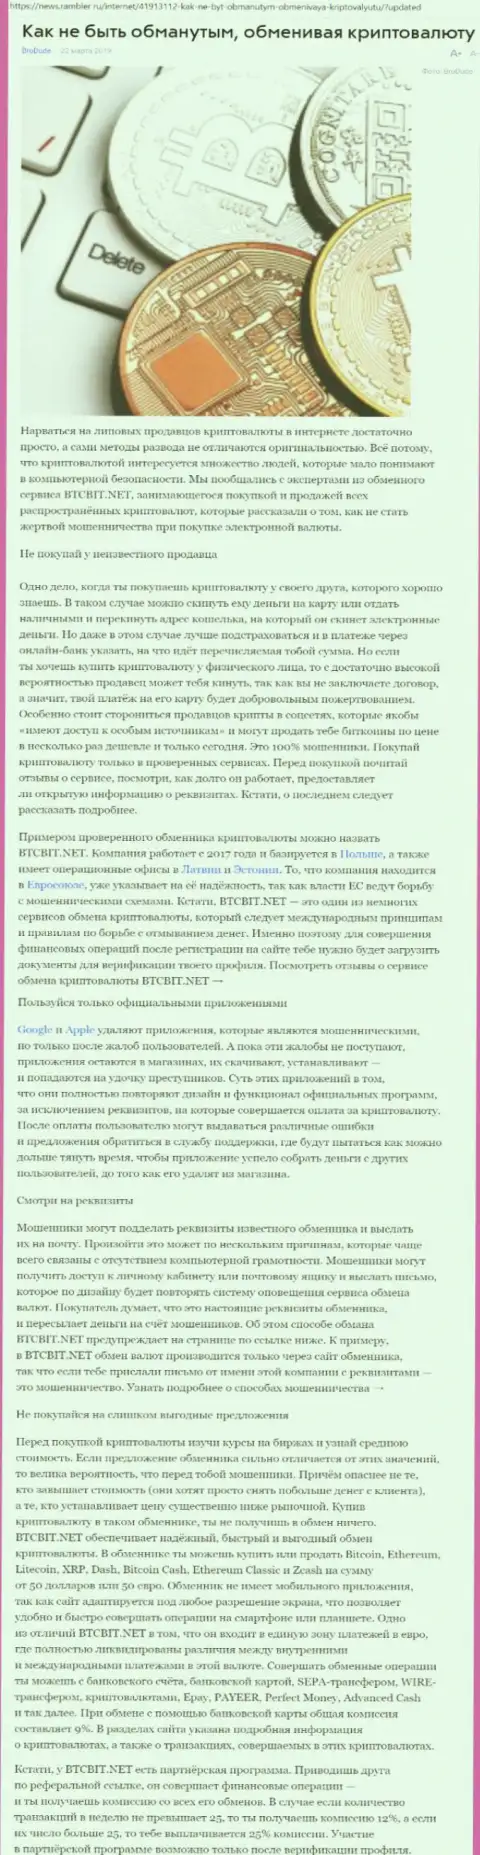 Статья об онлайн обменнике BTCBit на News Rambler Ru